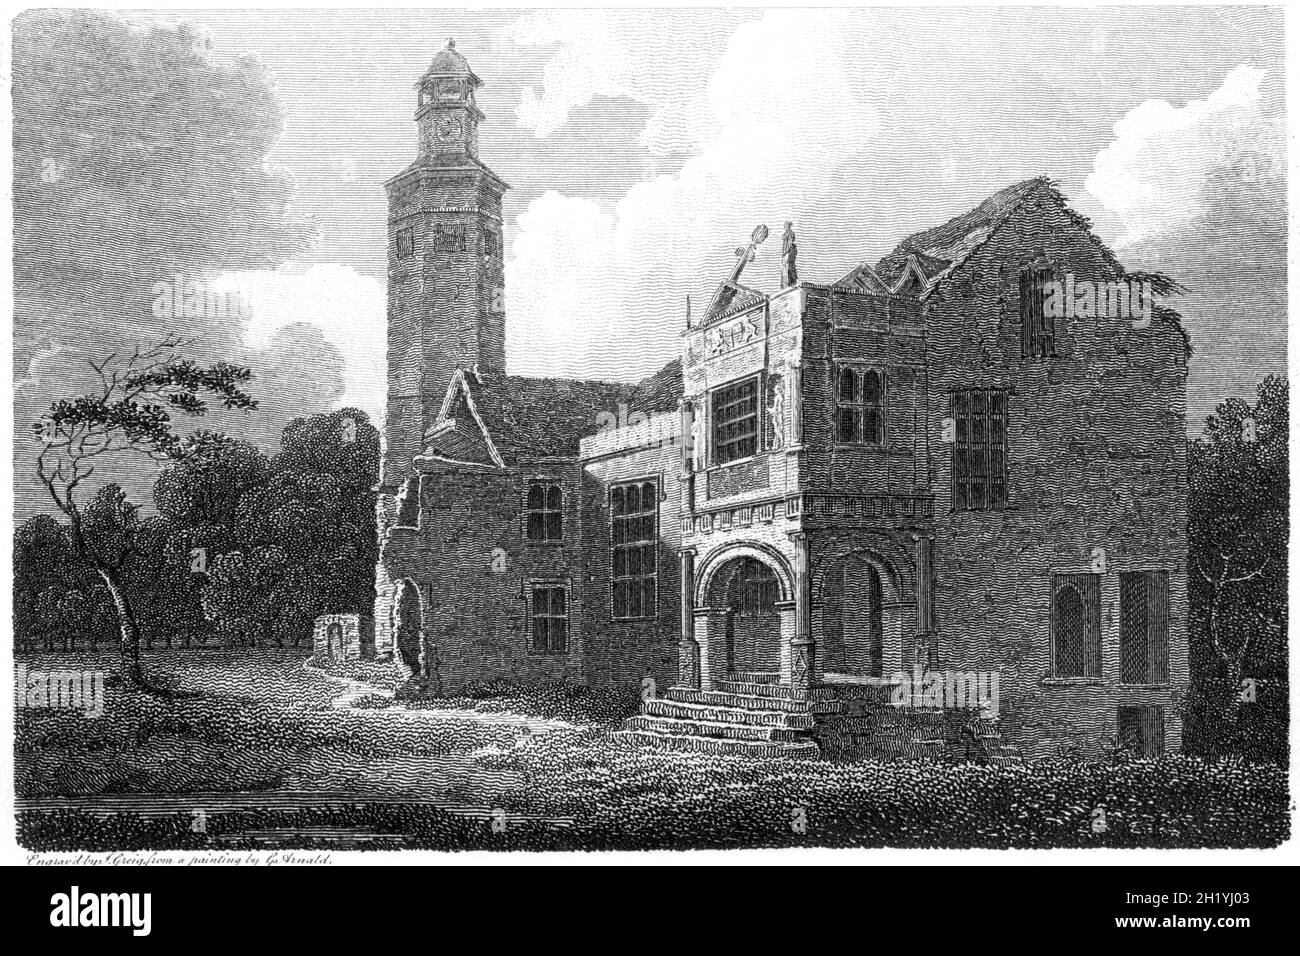 Ein Stich der Überreste des Gorhambury House, Hertfordshire, gescannt in hoher Auflösung aus einem Buch, das 1812 gedruckt wurde. Für urheberrechtlich frei gehalten. Stockfoto